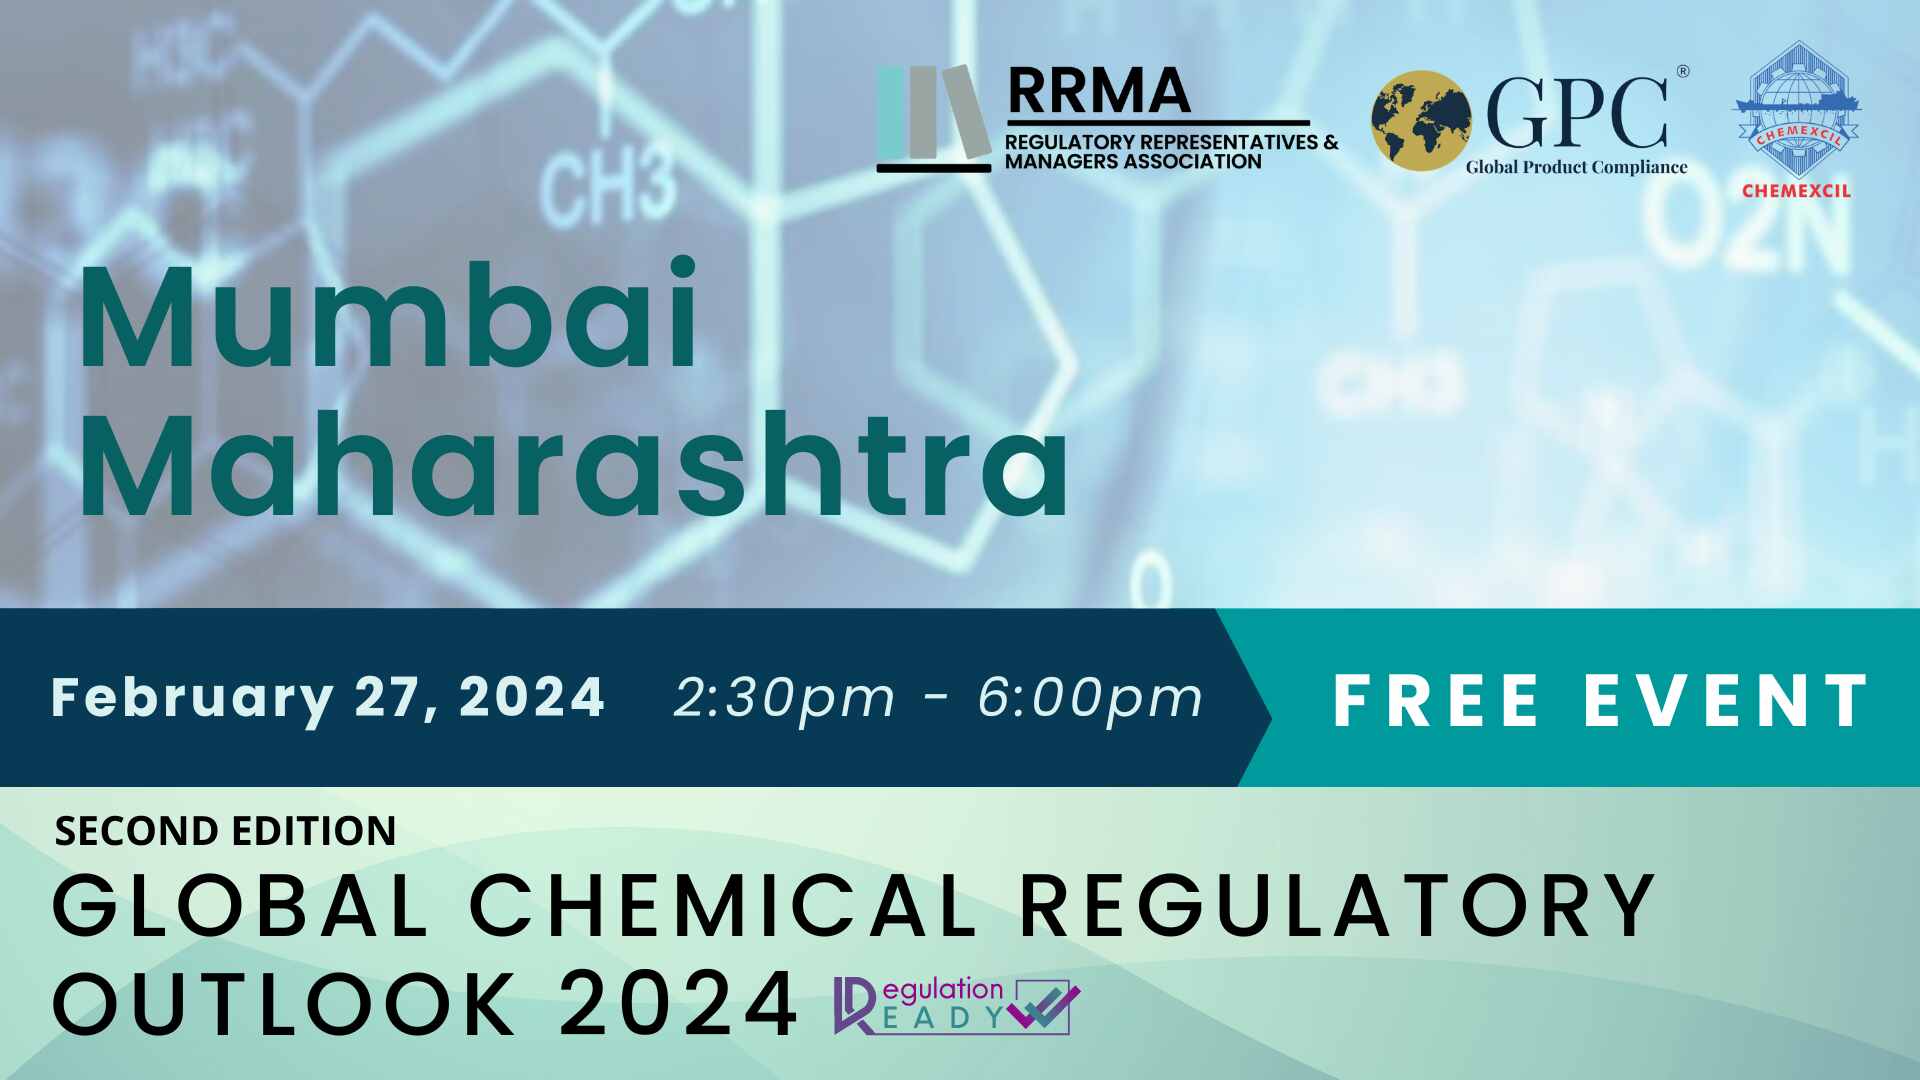 Global Chemical Regulatory Outlook 2024 in Mumbai